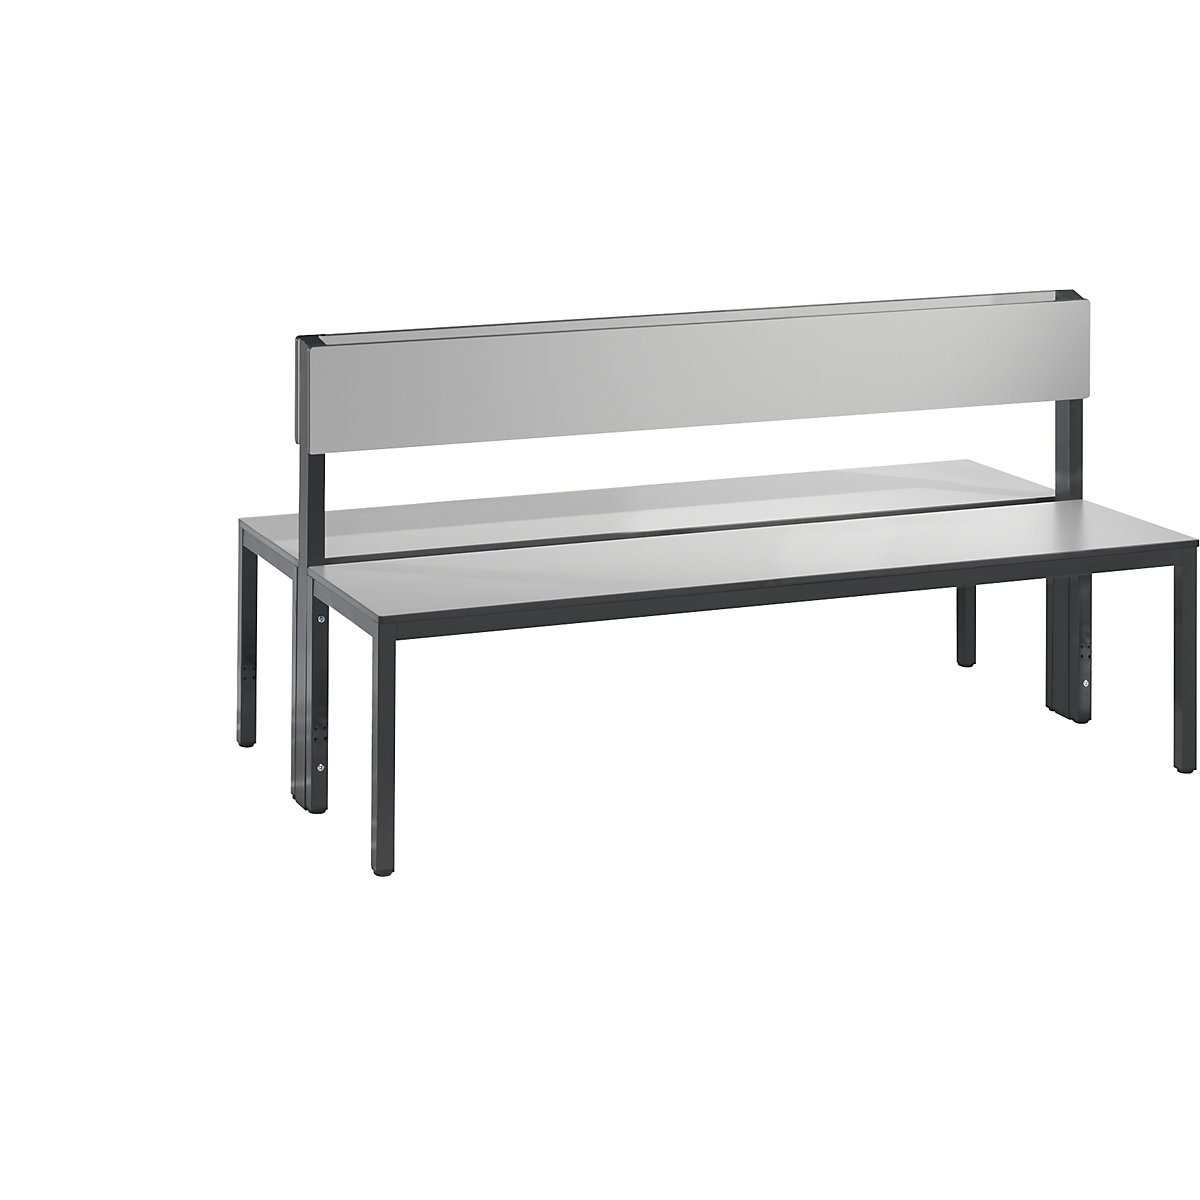 Banc de vestiaire BASIC PLUS double face – C+P, surface de l'assise en stratifié HPL, mi-haut, longueur 1500 mm, gris argent-9